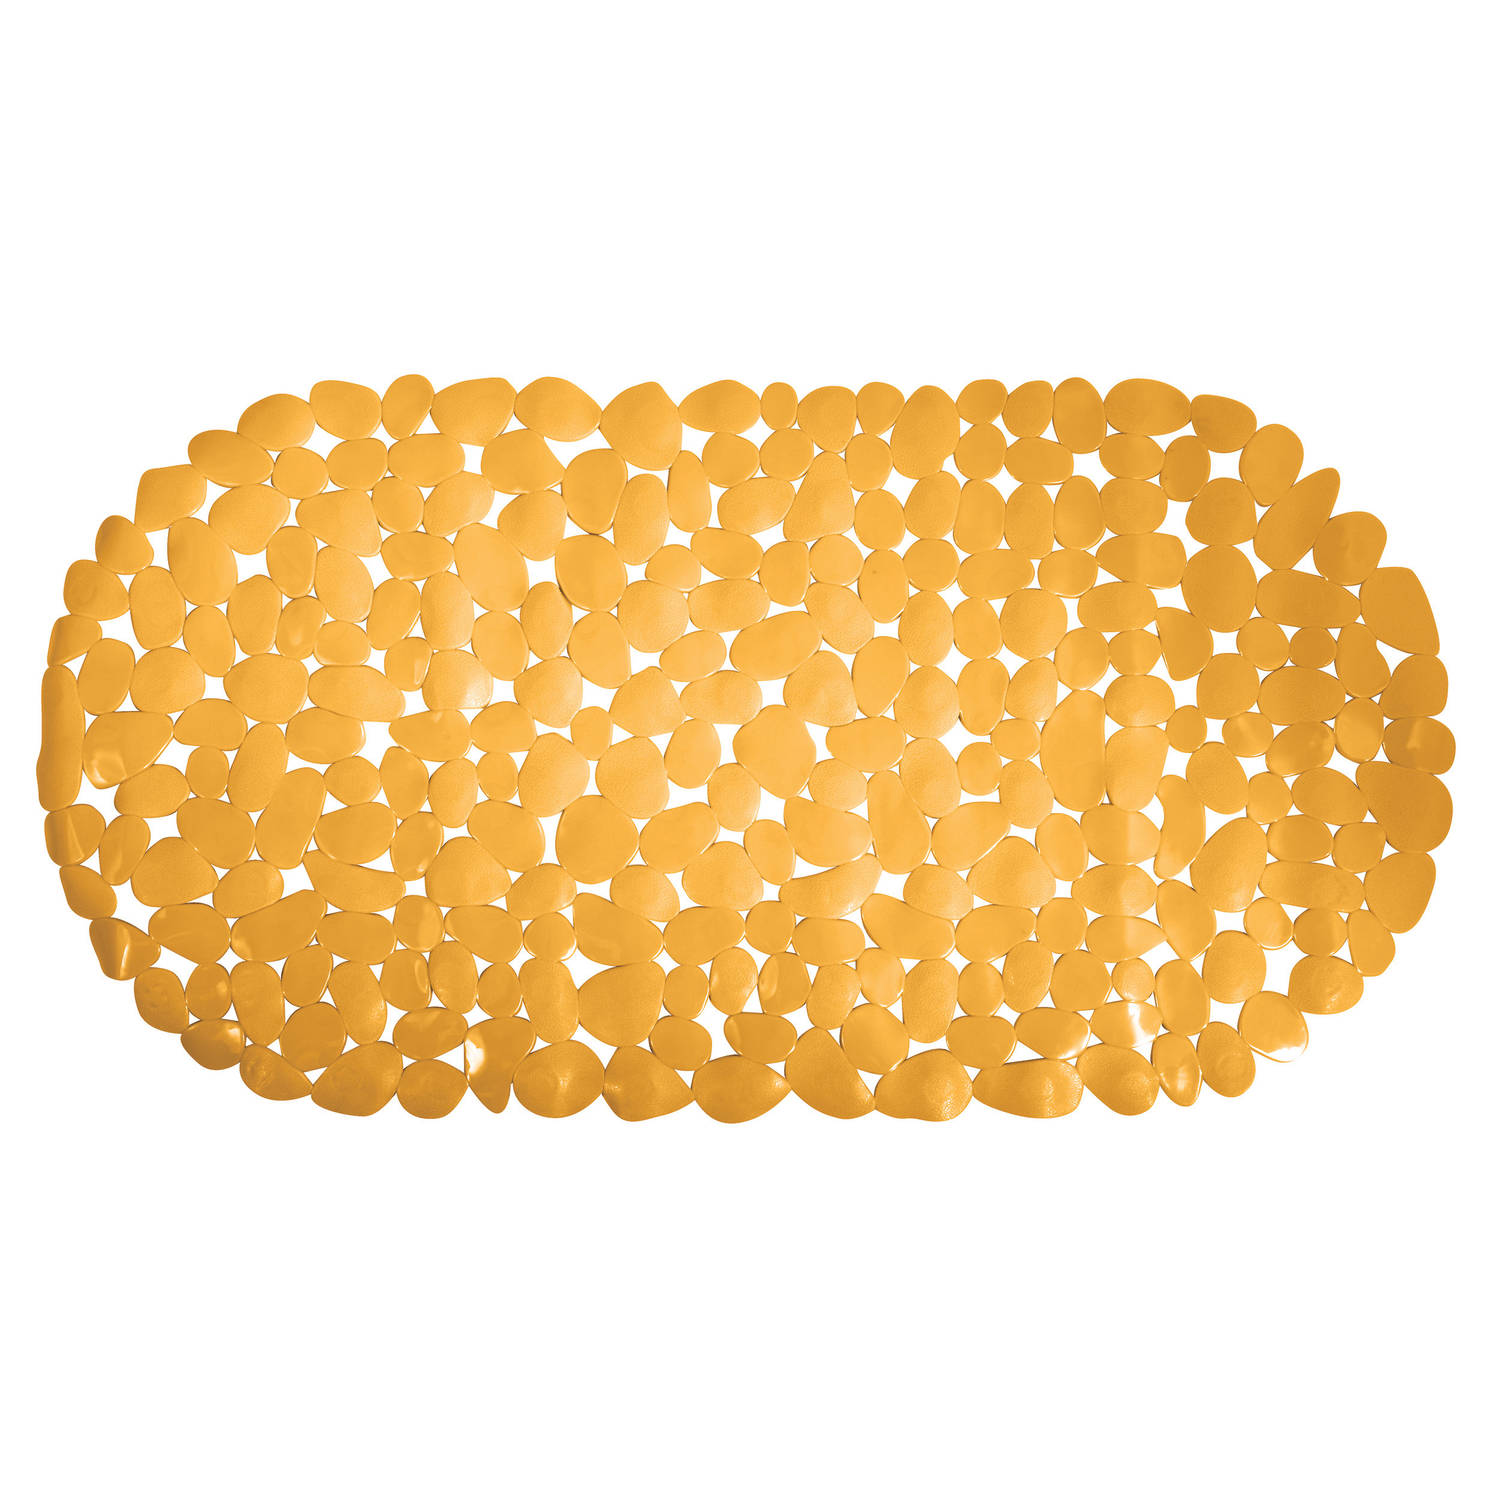 MSV Douche/bad anti-slip mat - badkamer - pvc - saffraan geel - 35 x 68 cm - zuignappen - steentjes motief